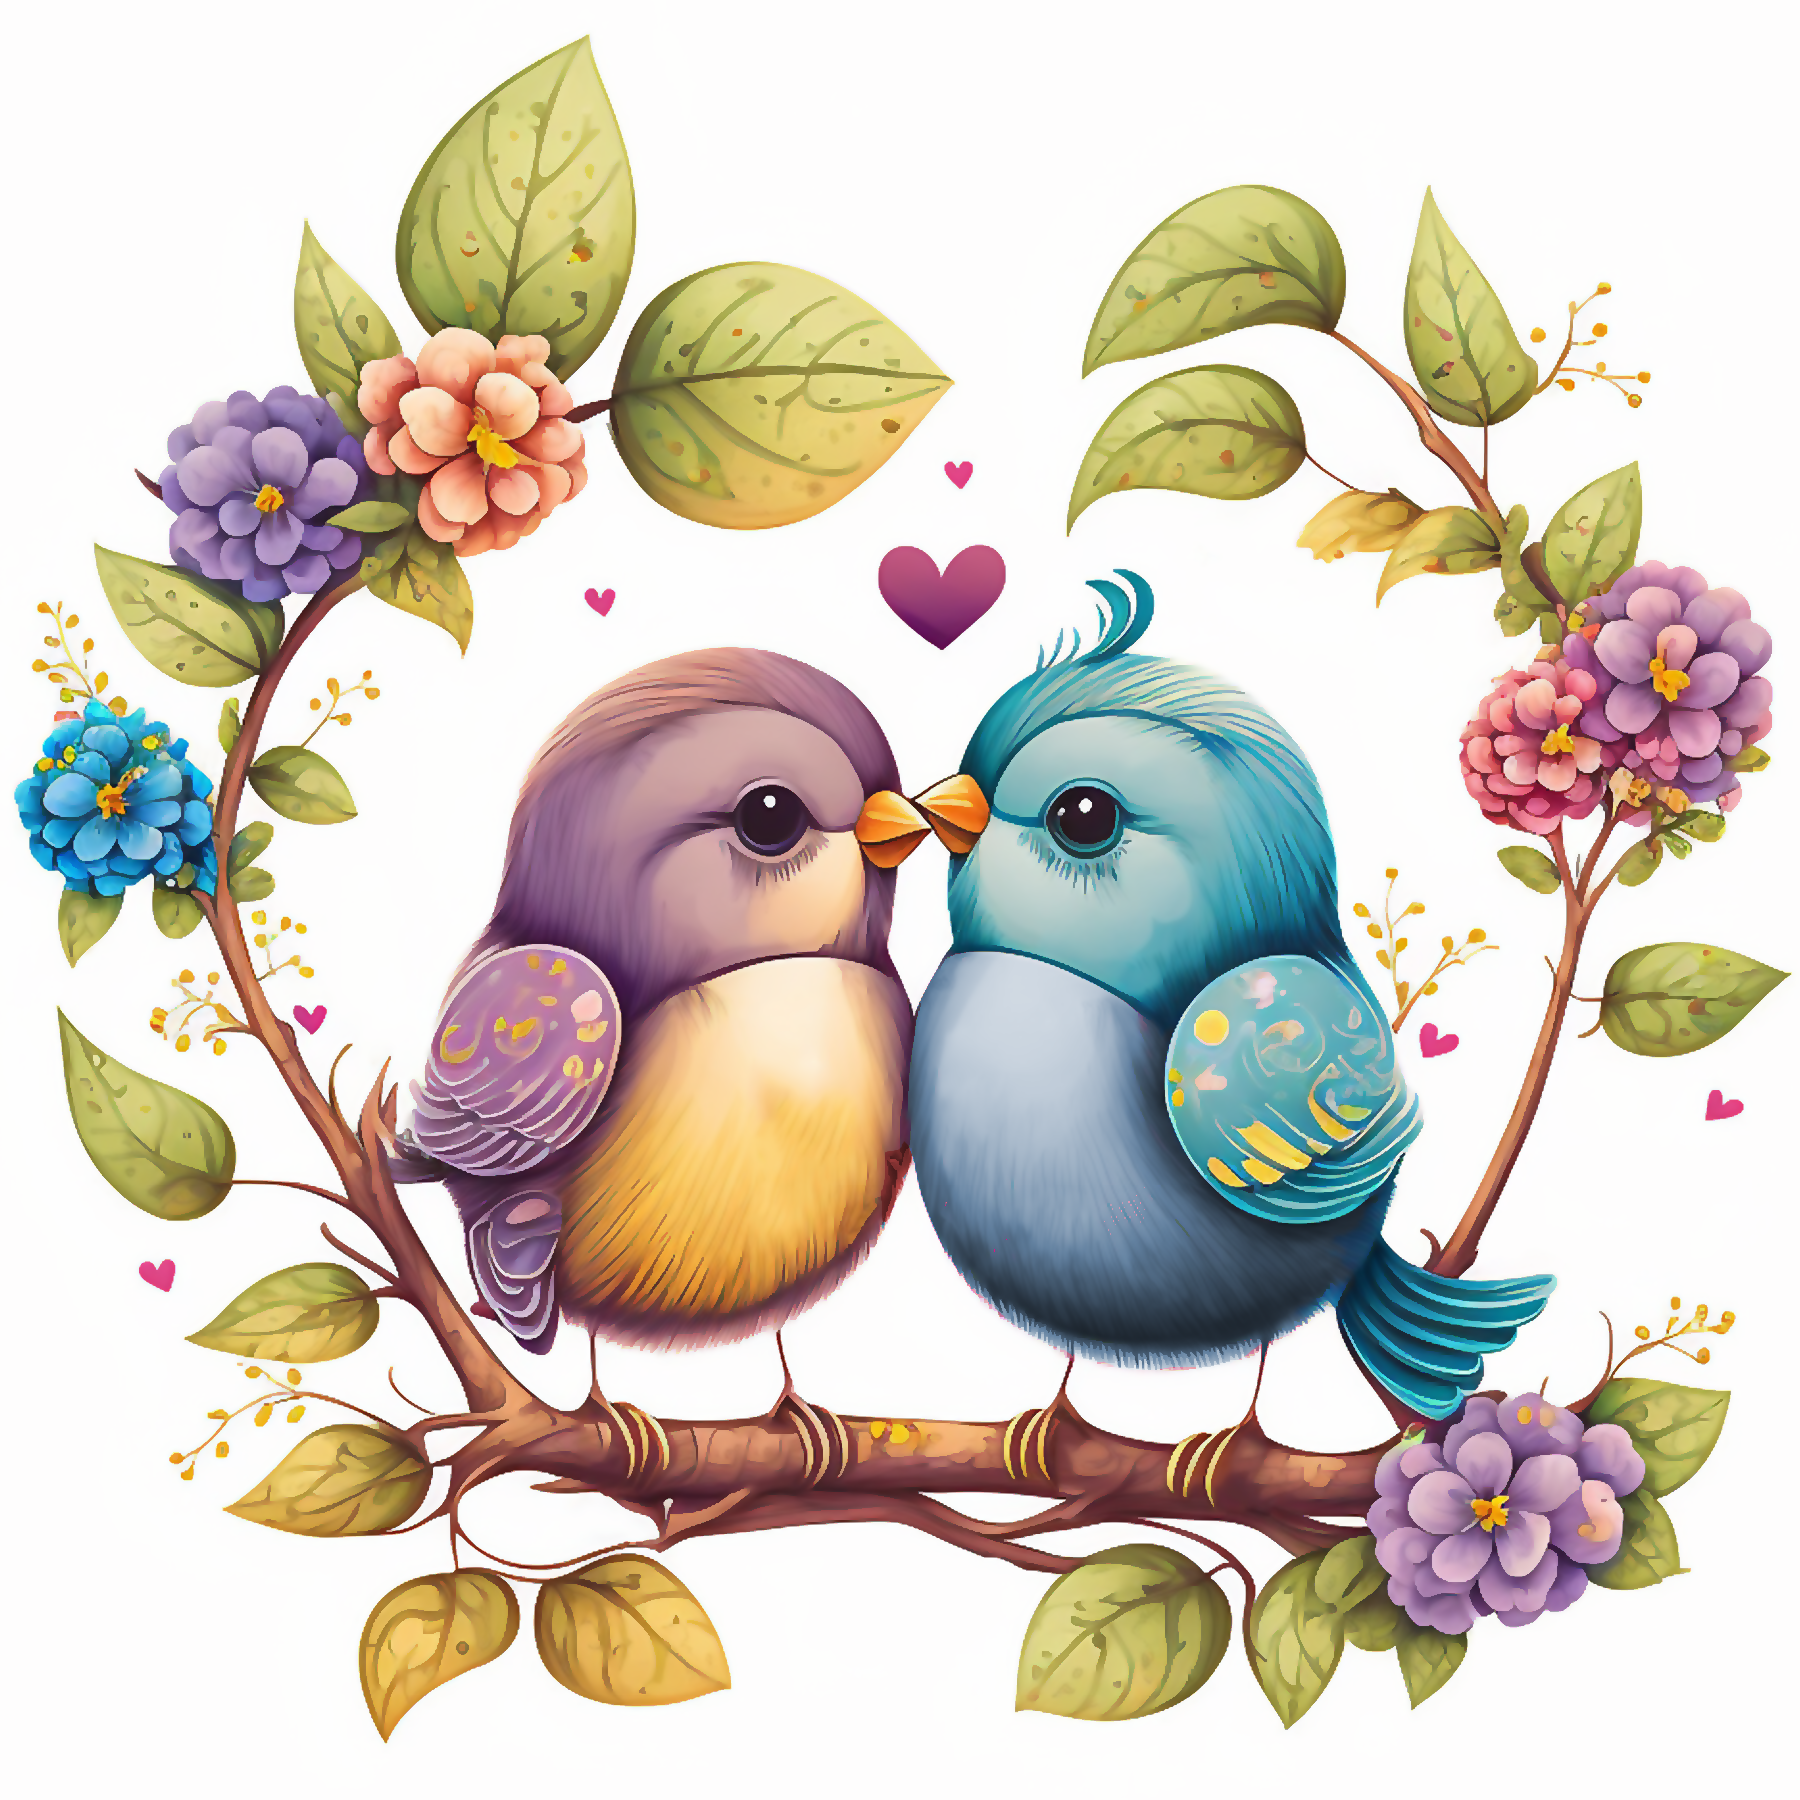 Free Valentine's Day art, lovebirds wall art, free, little bird design, free valentine poster, free floral bird image